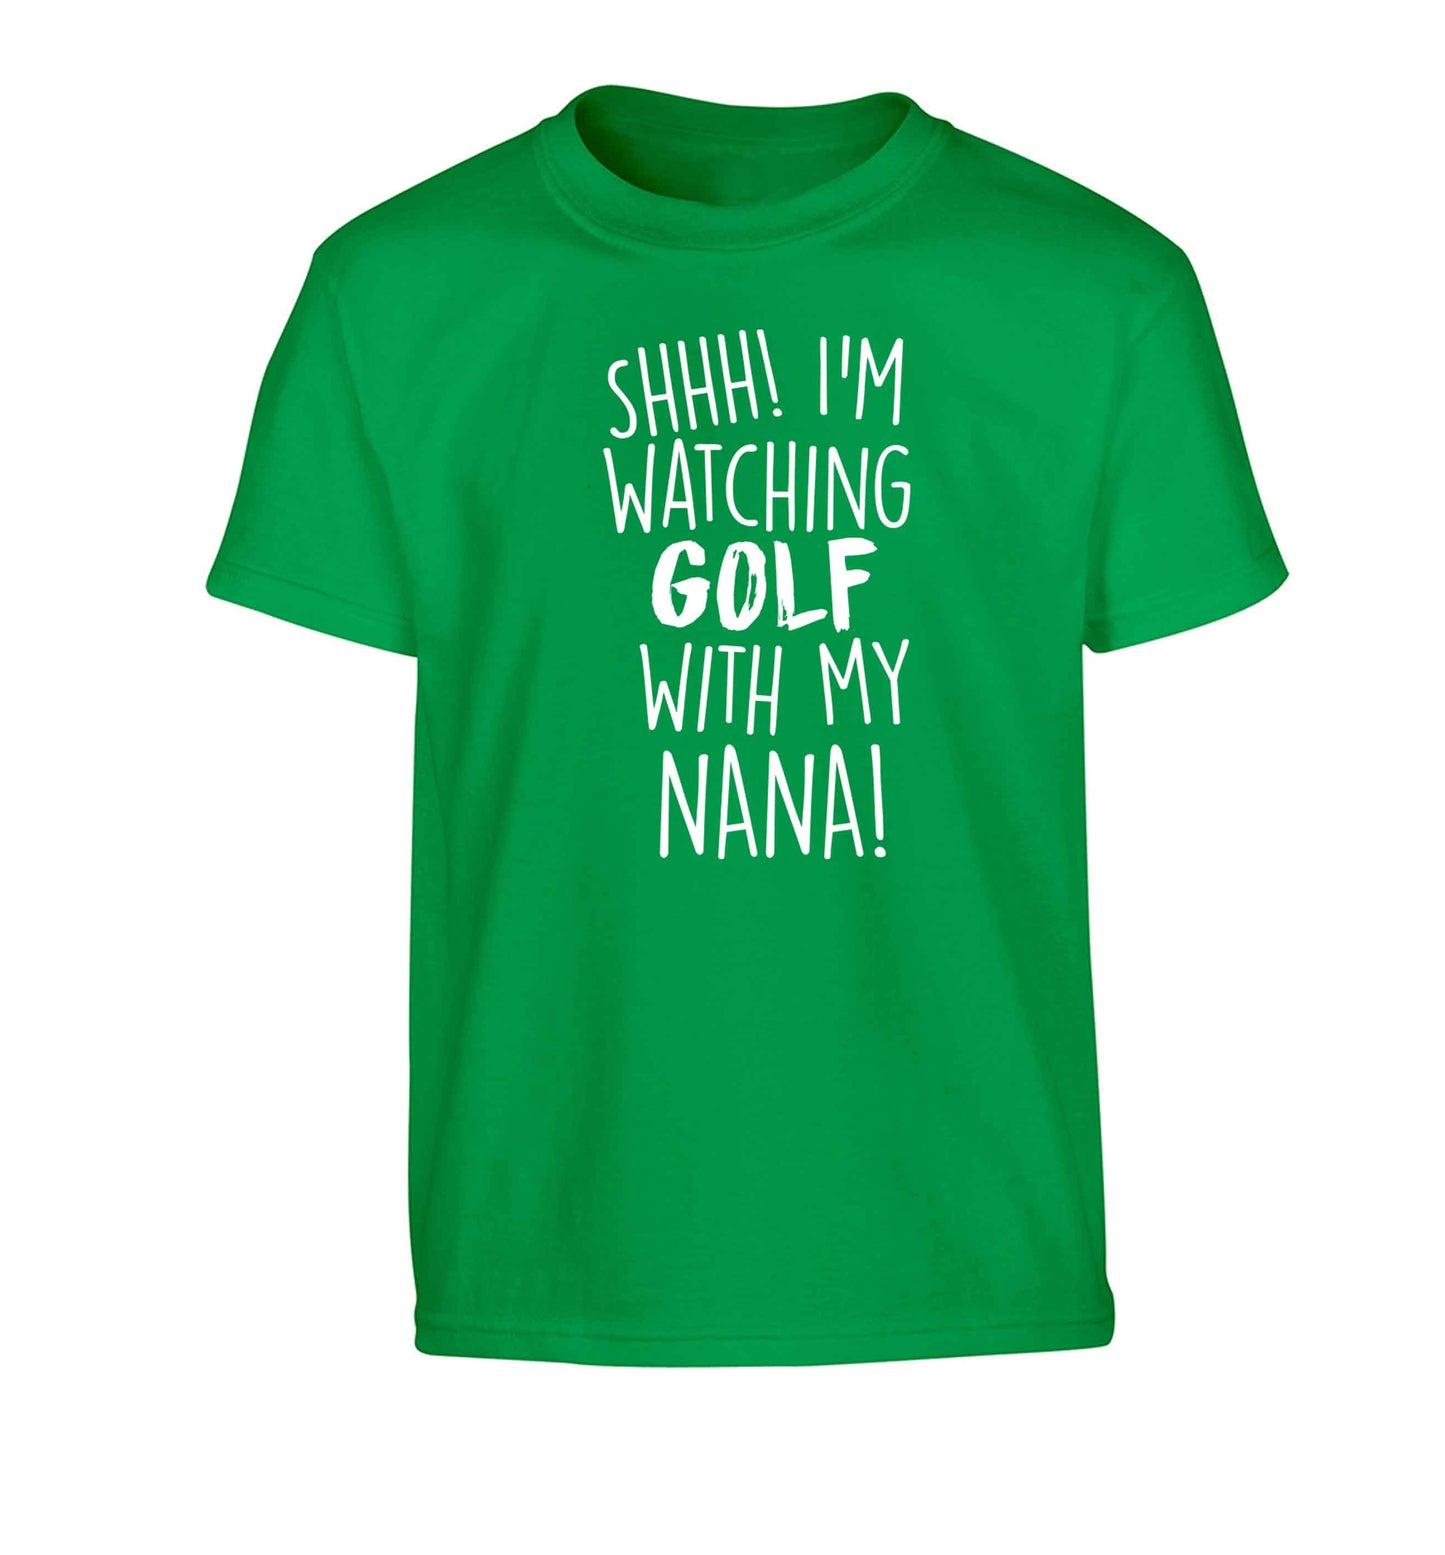 Shh I'm watching golf with my nana Children's green Tshirt 12-13 Years